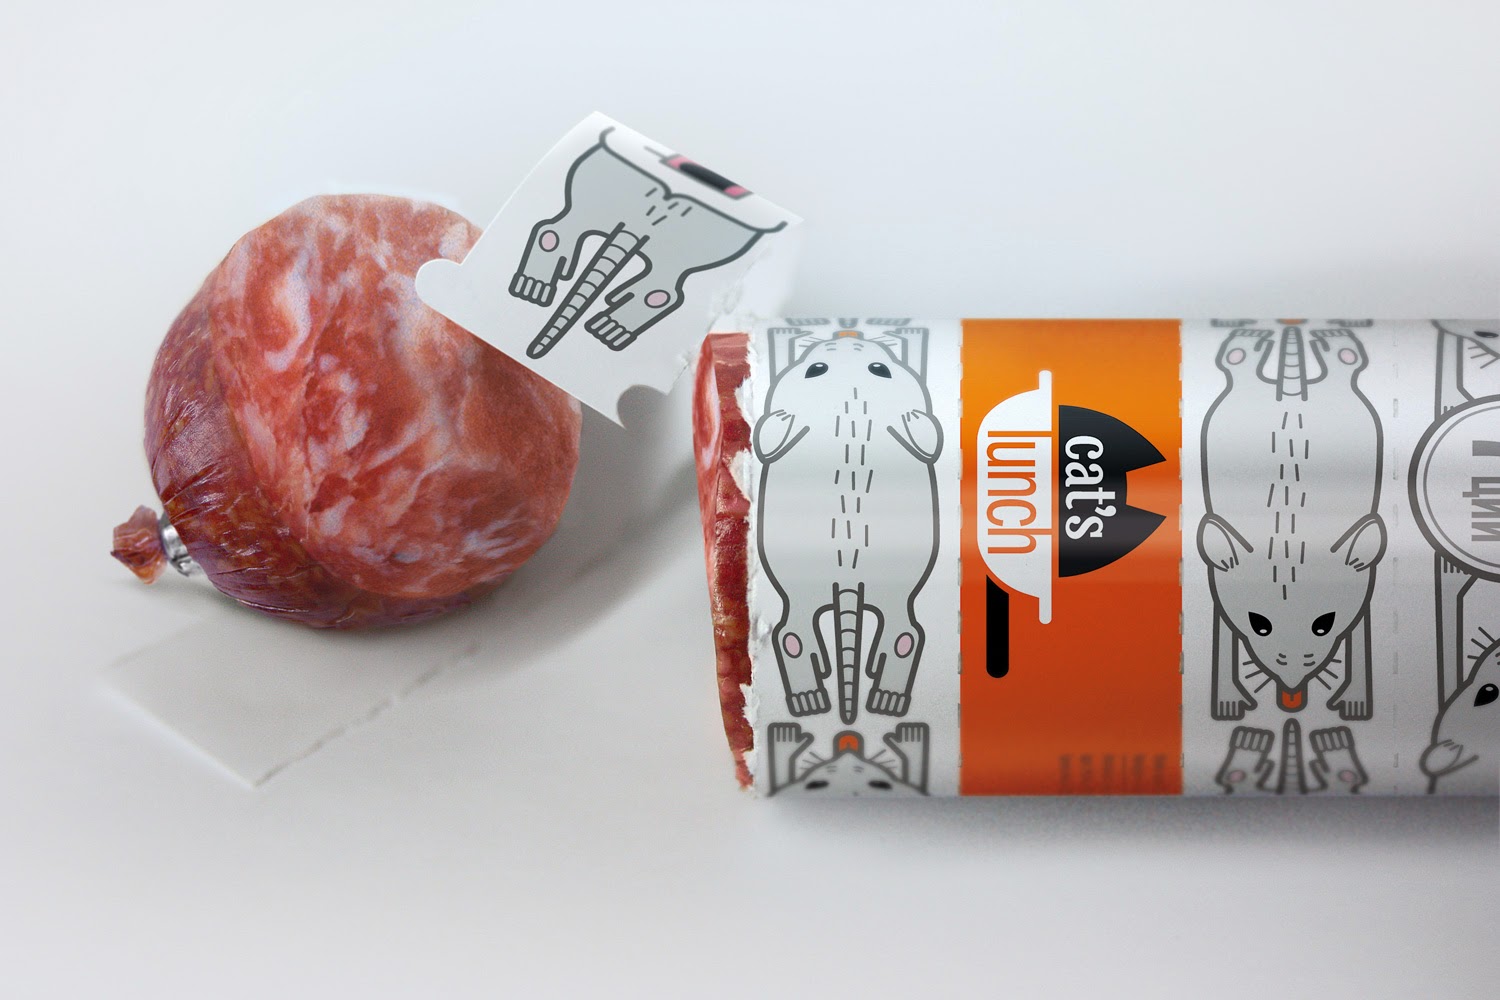 Весел упаковка. Креативная упаковка продуктов. Необычные упаковки продуктов. Креативная упаковка колбасы. Необычная упаковка колбасы.